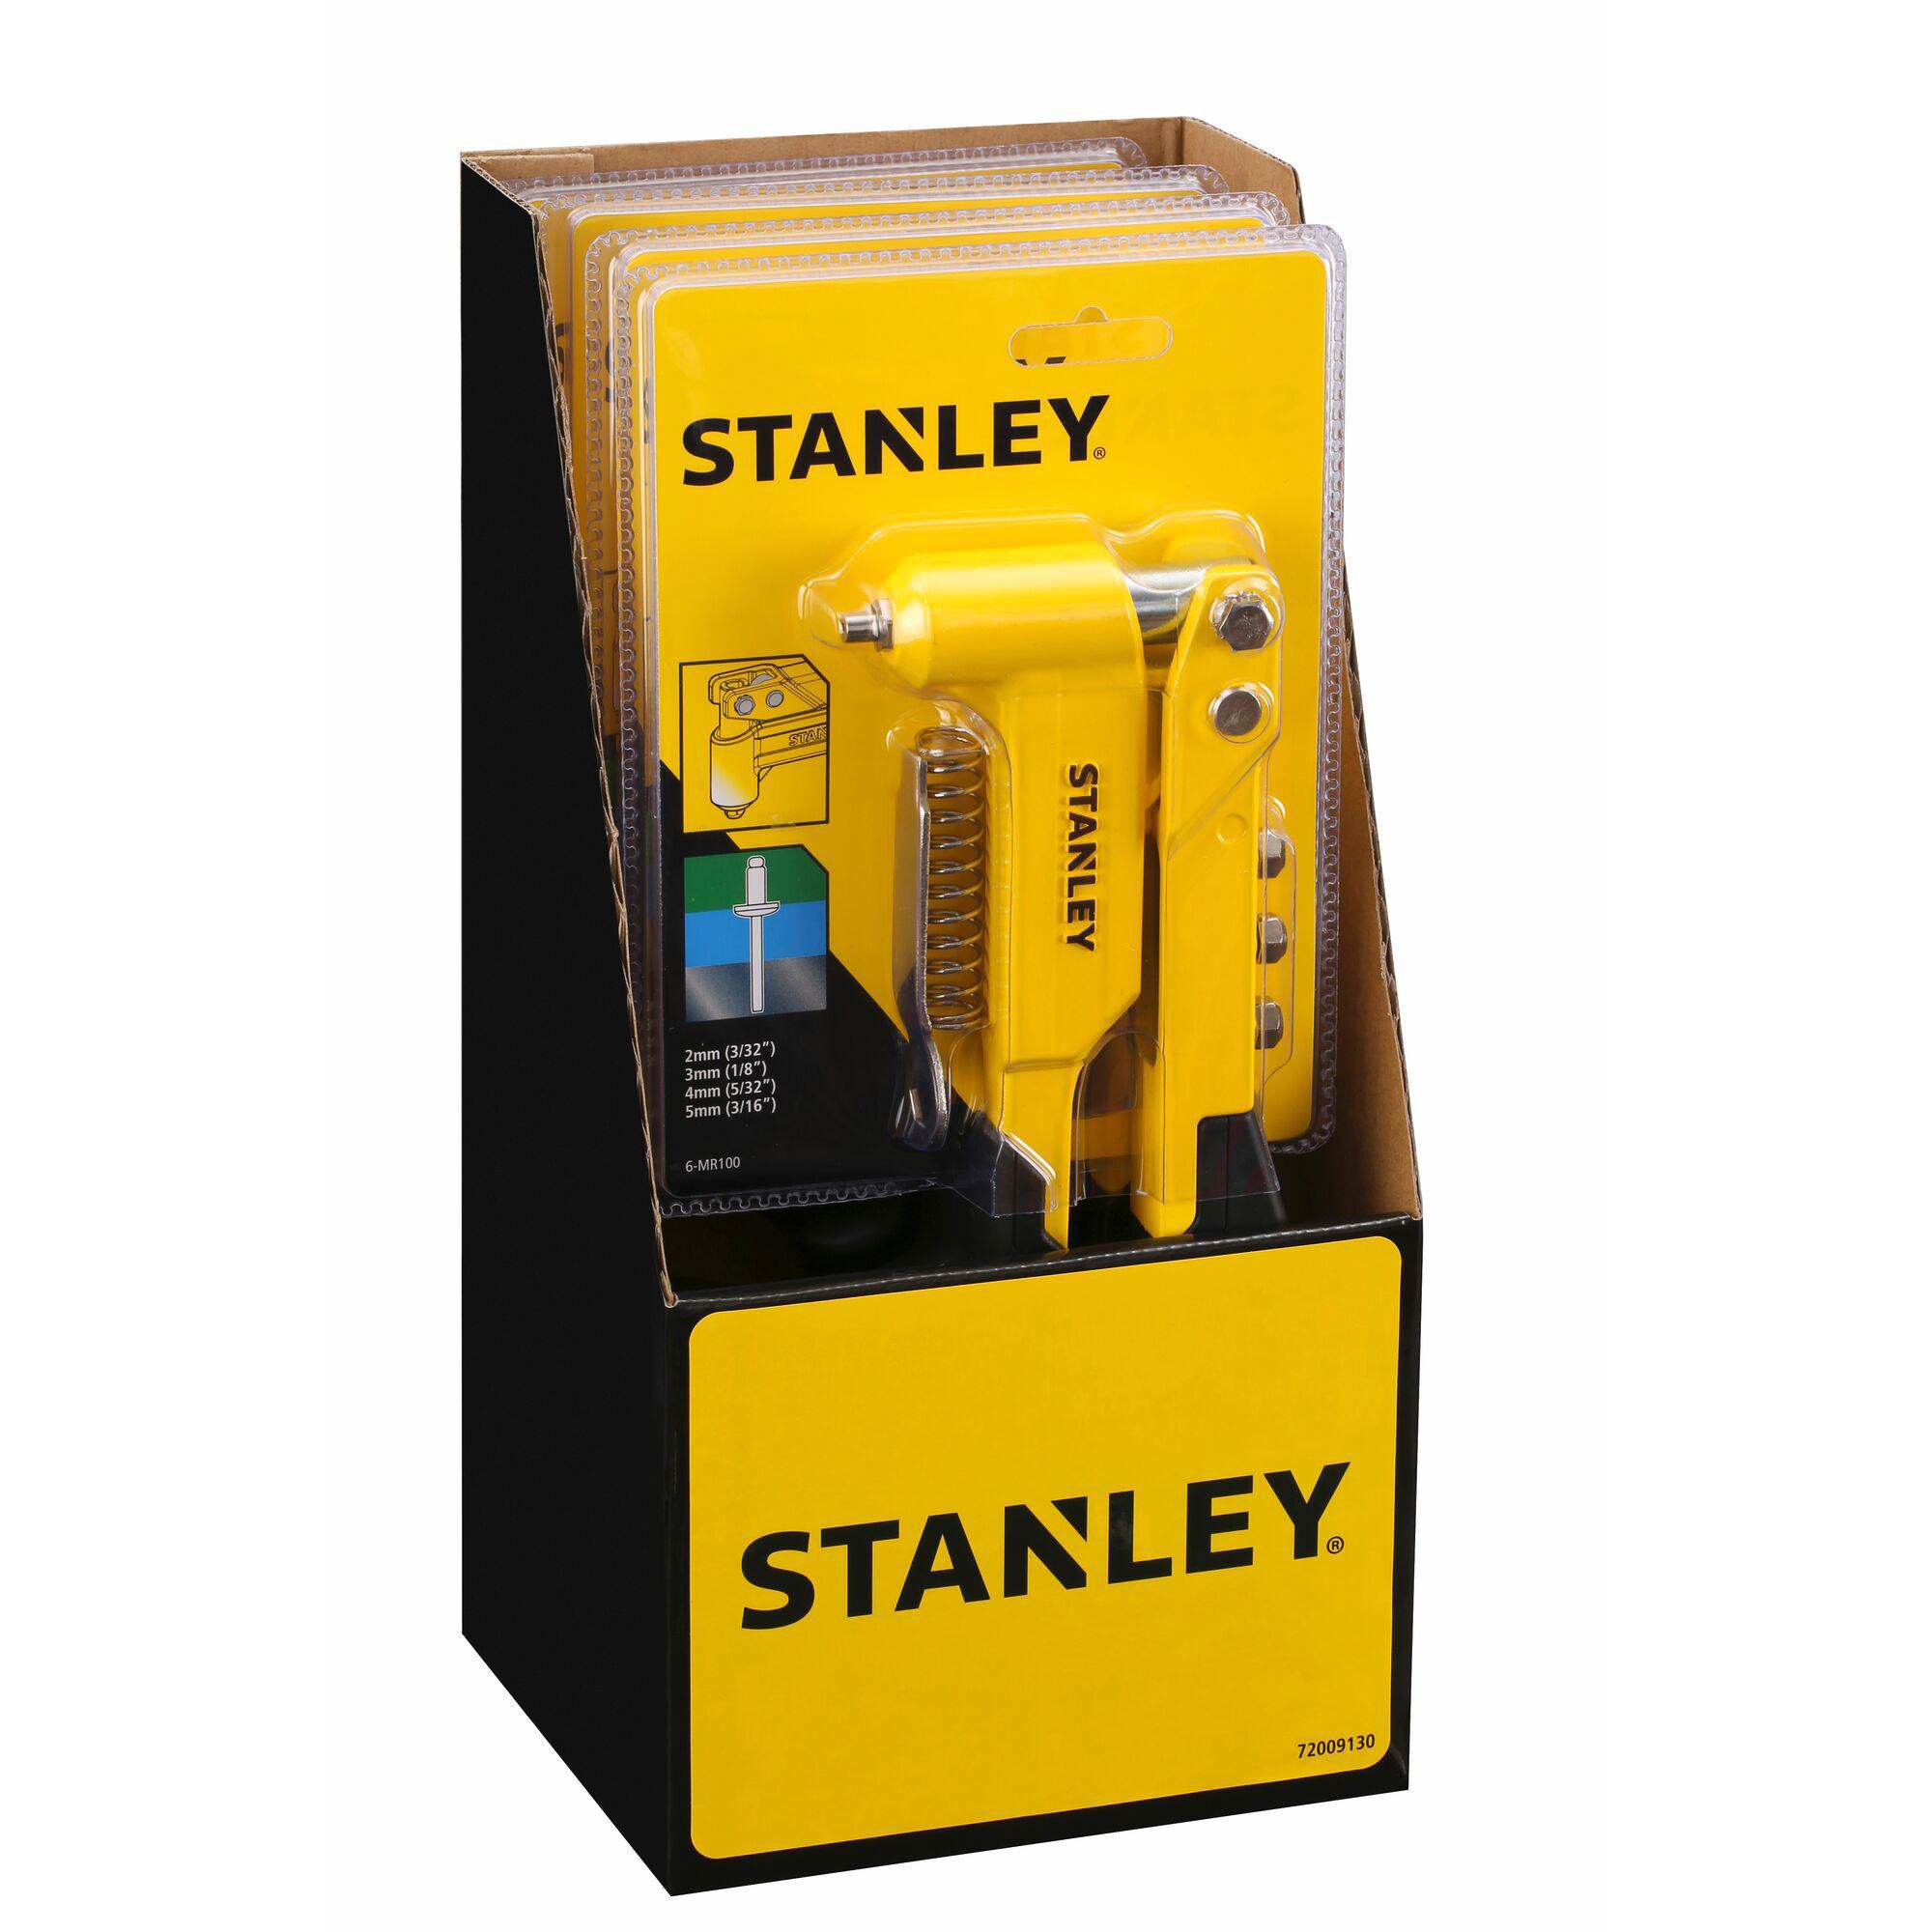 Stanley Powder-coated steel Riveter